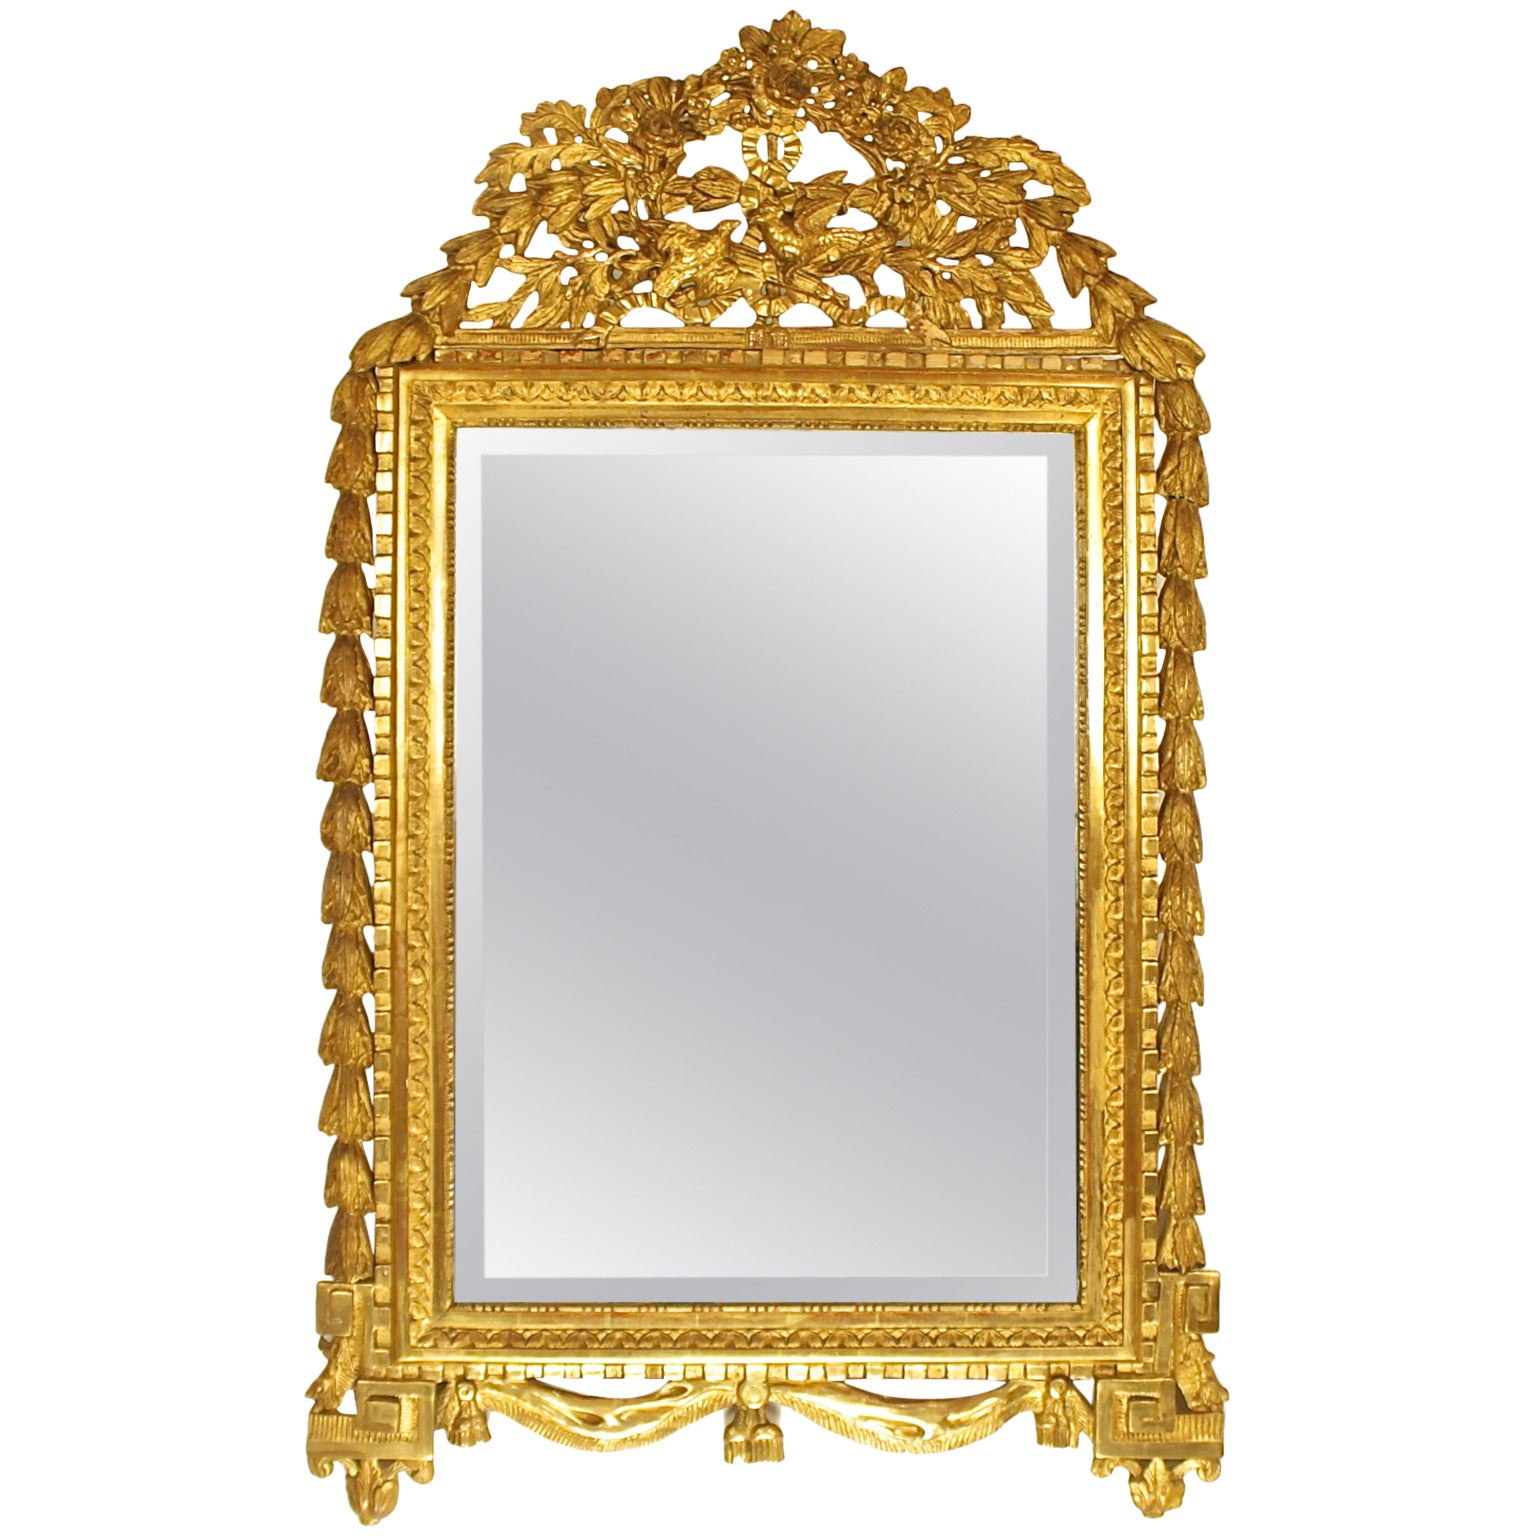 18th Century Louis XVI Giltwood Mirror